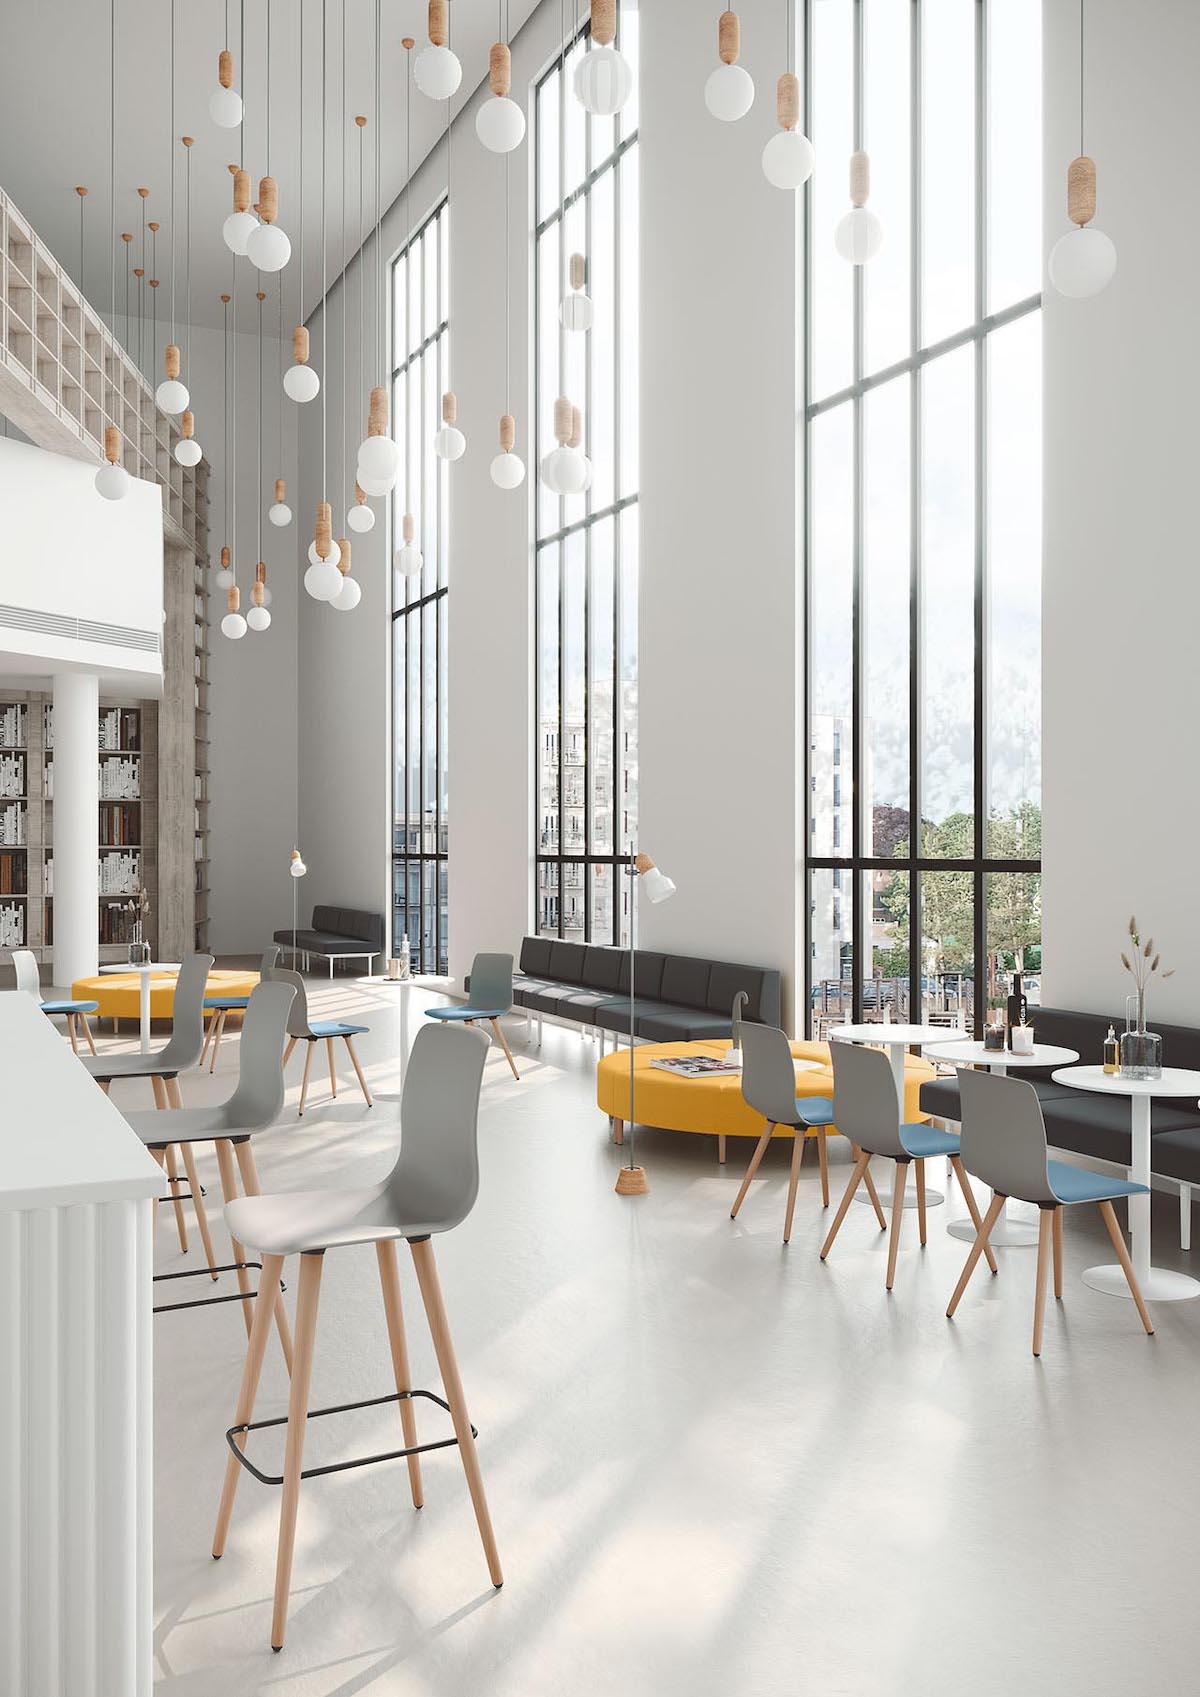 cantine entreprise covid chaise design cafeteria société siège moderne architecture